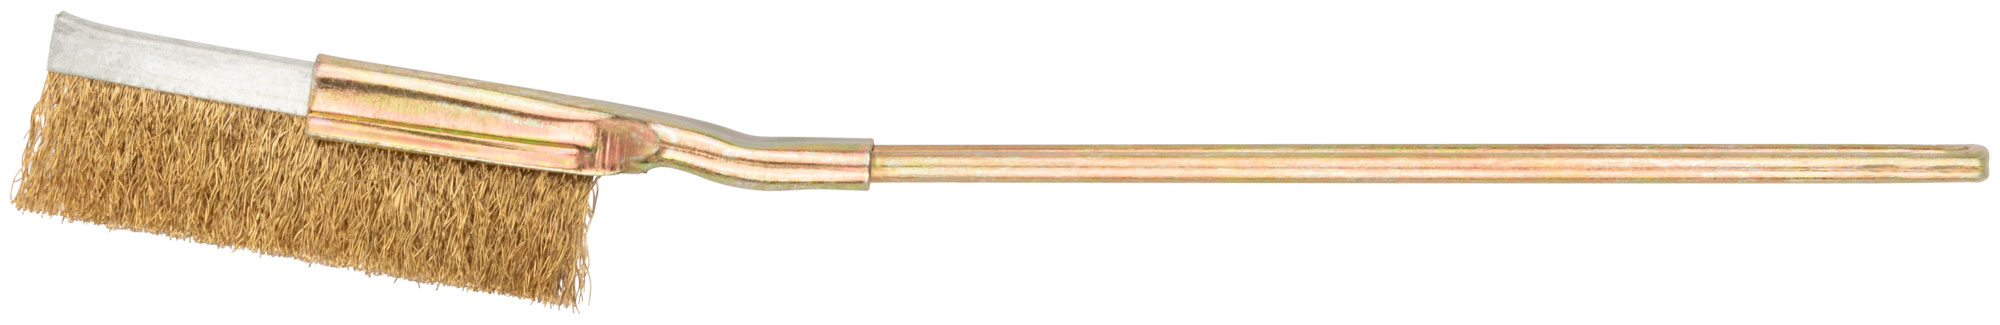 Корщетка-мини 250 мм, прямая FIT 38448 корщетка для зачистки швов птк